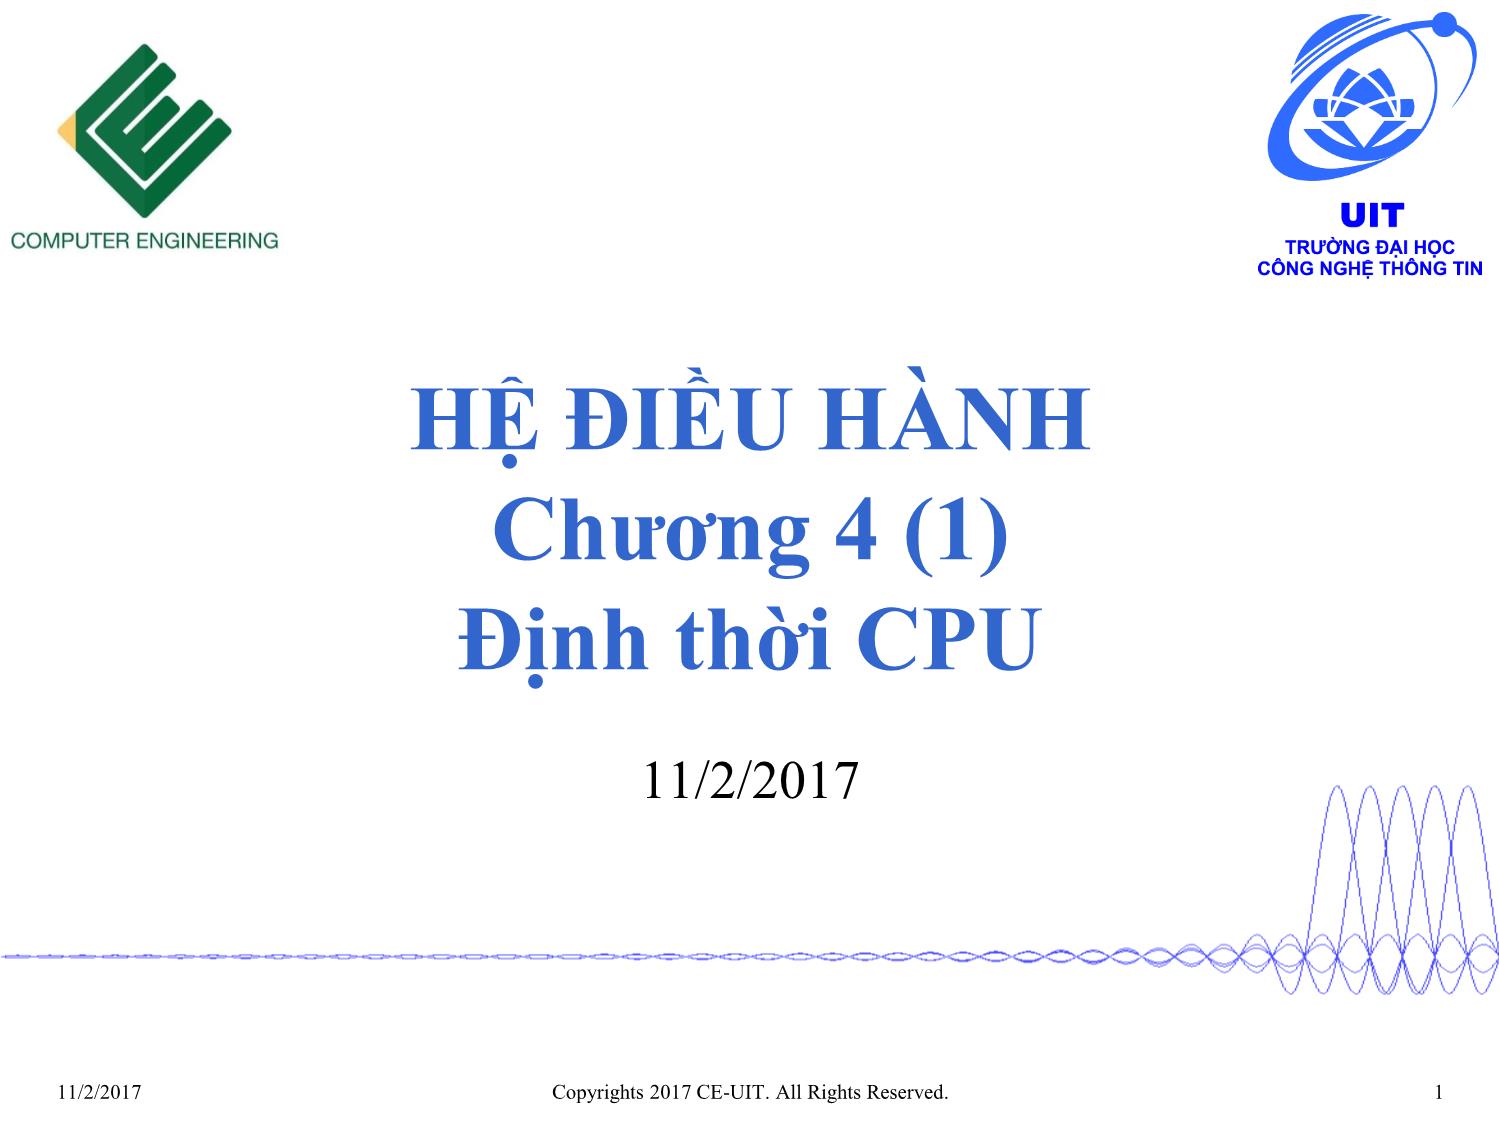 Bài giảng Hệ điều hành - Chương 4, Phần 1: Định thời CPU - Phan Đình Duy trang 1